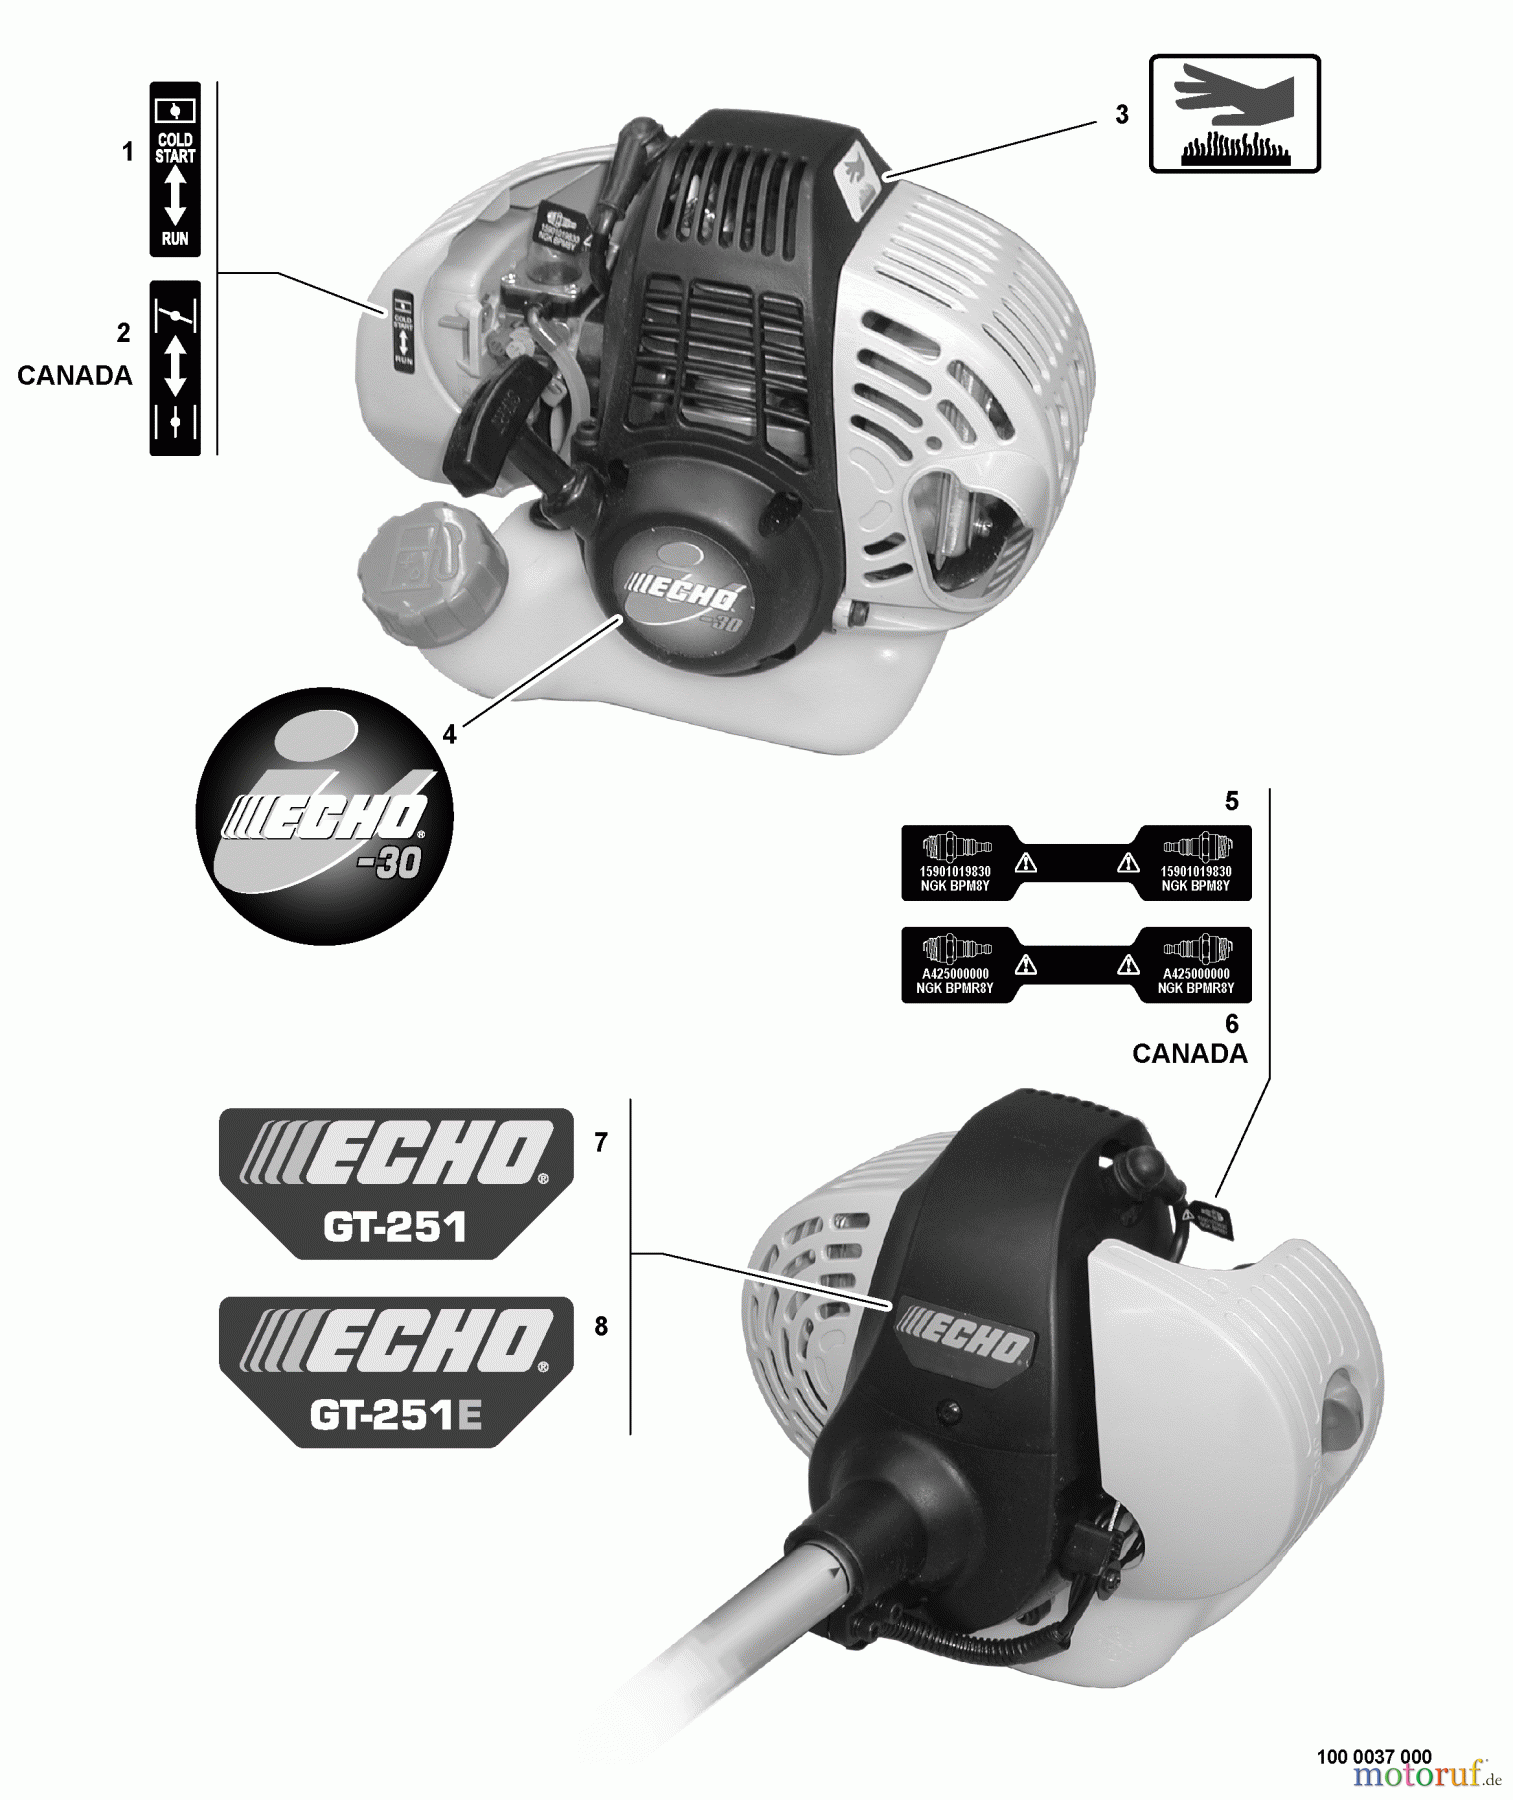  Echo Trimmer, Faden / Bürste GT-251 - Echo String Trimmer, S/N:S80013001001 - S80013999999 Labels